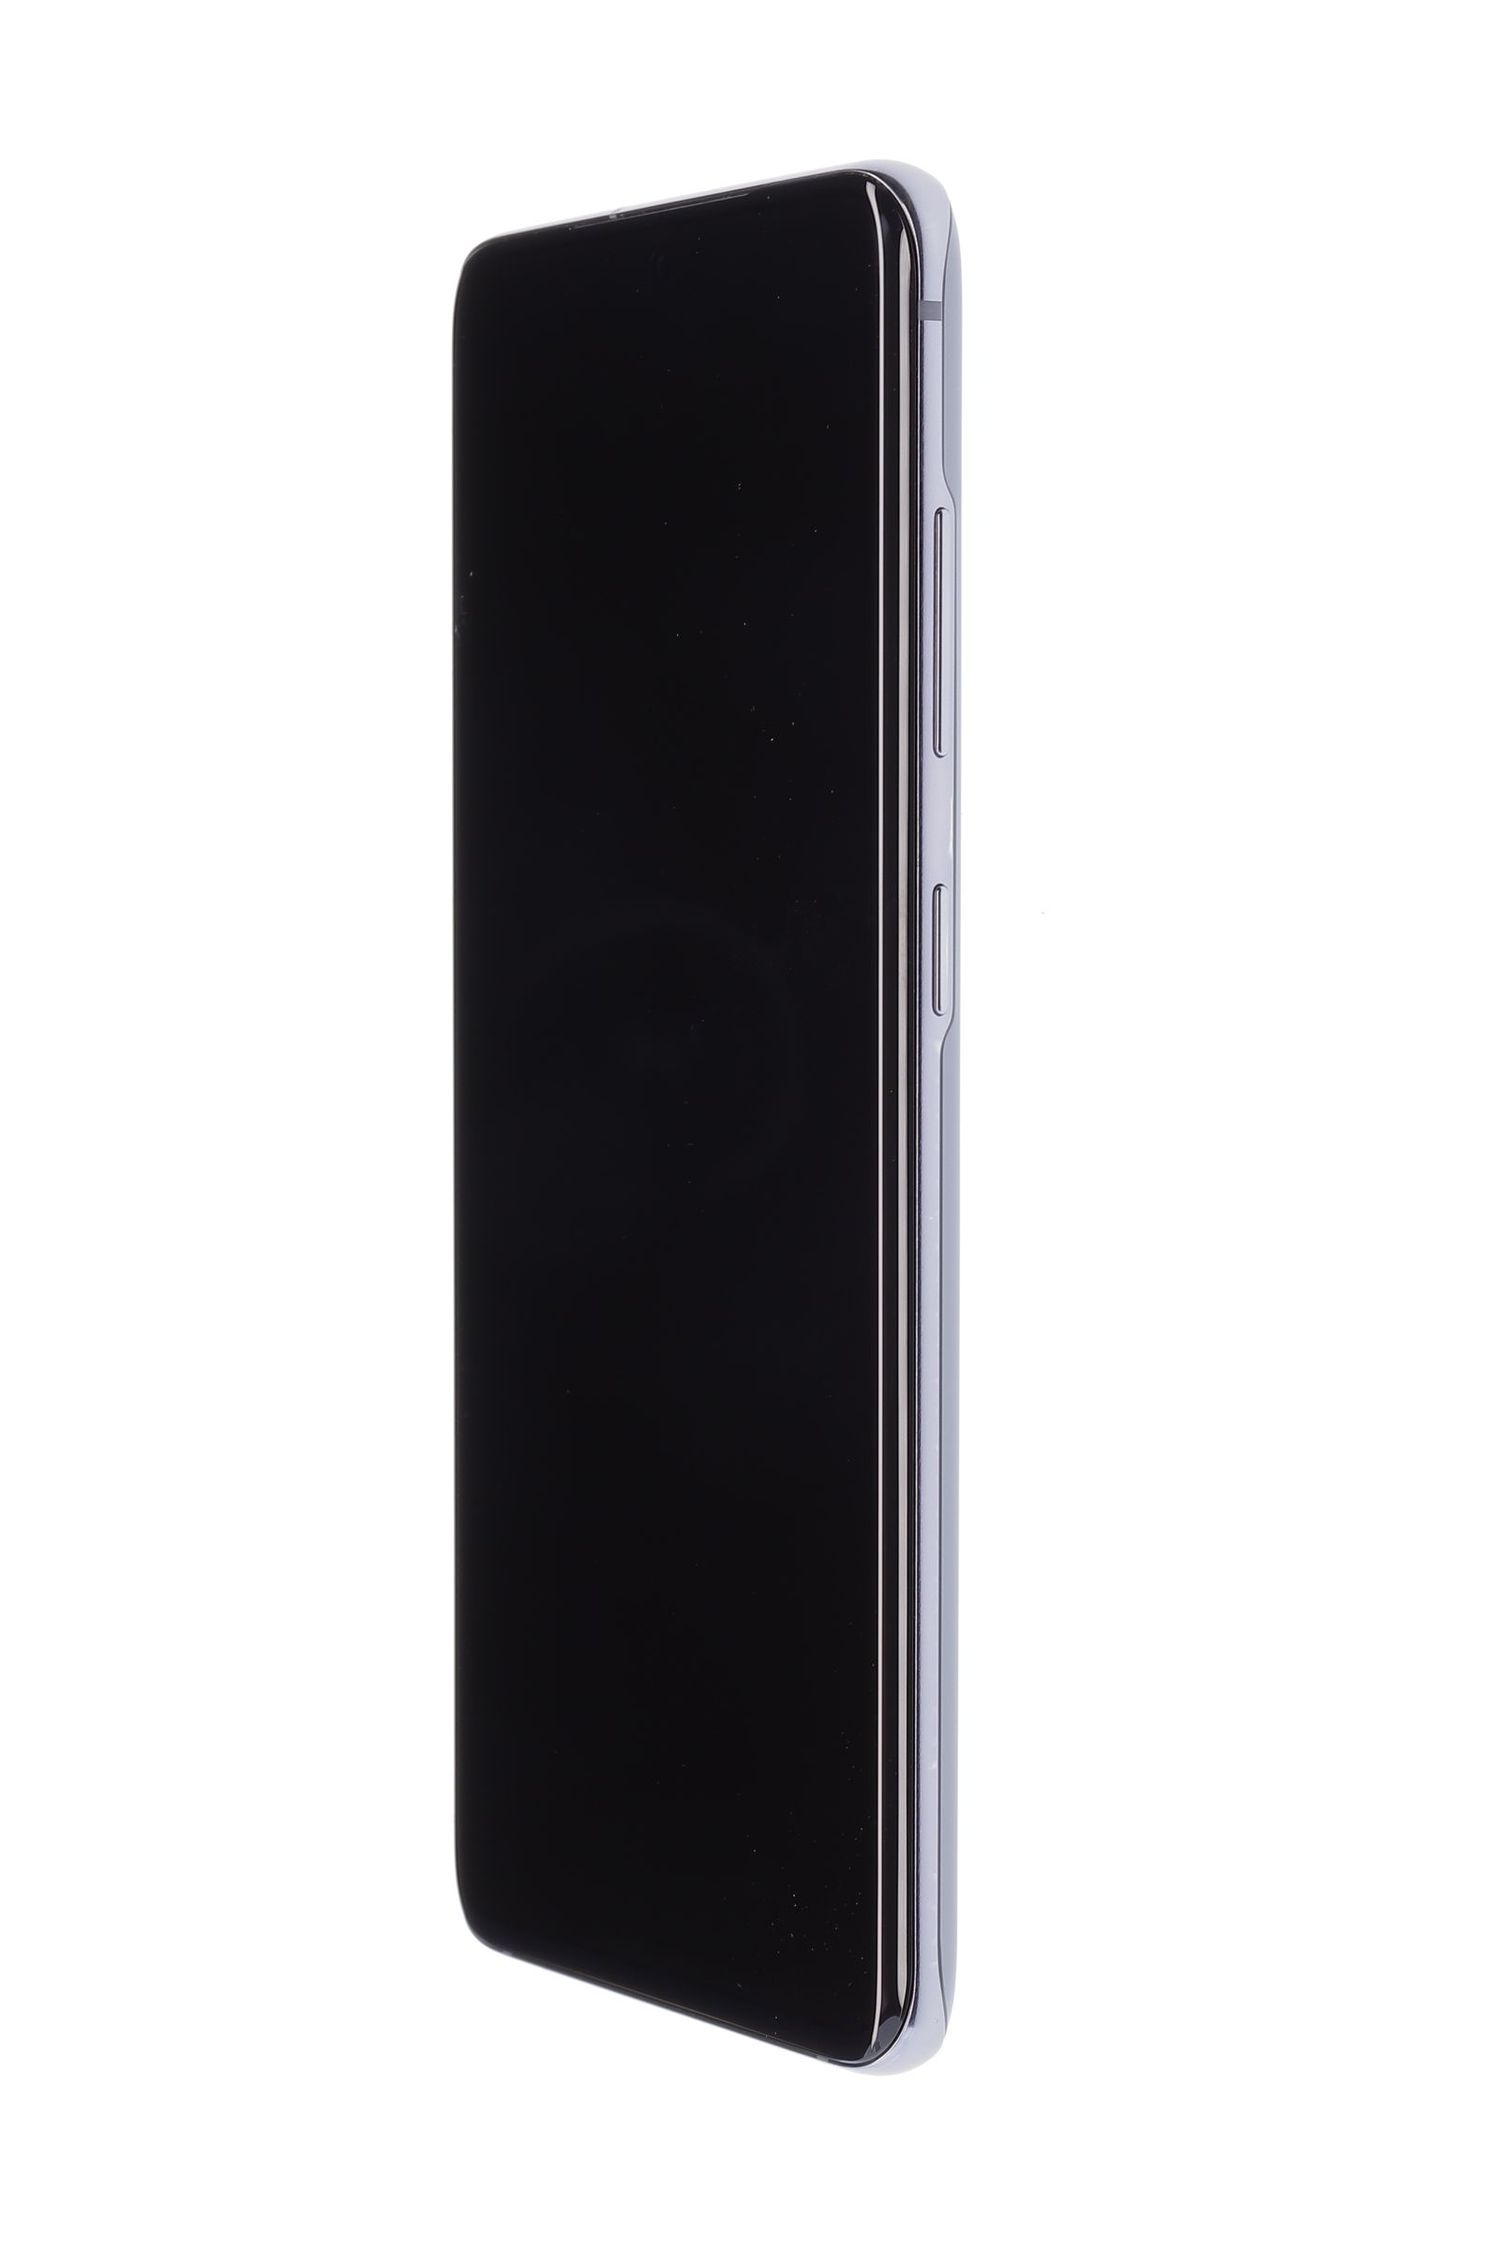 Κινητό τηλέφωνο Samsung Galaxy S20, Cosmic Gray, 128 GB, Excelent